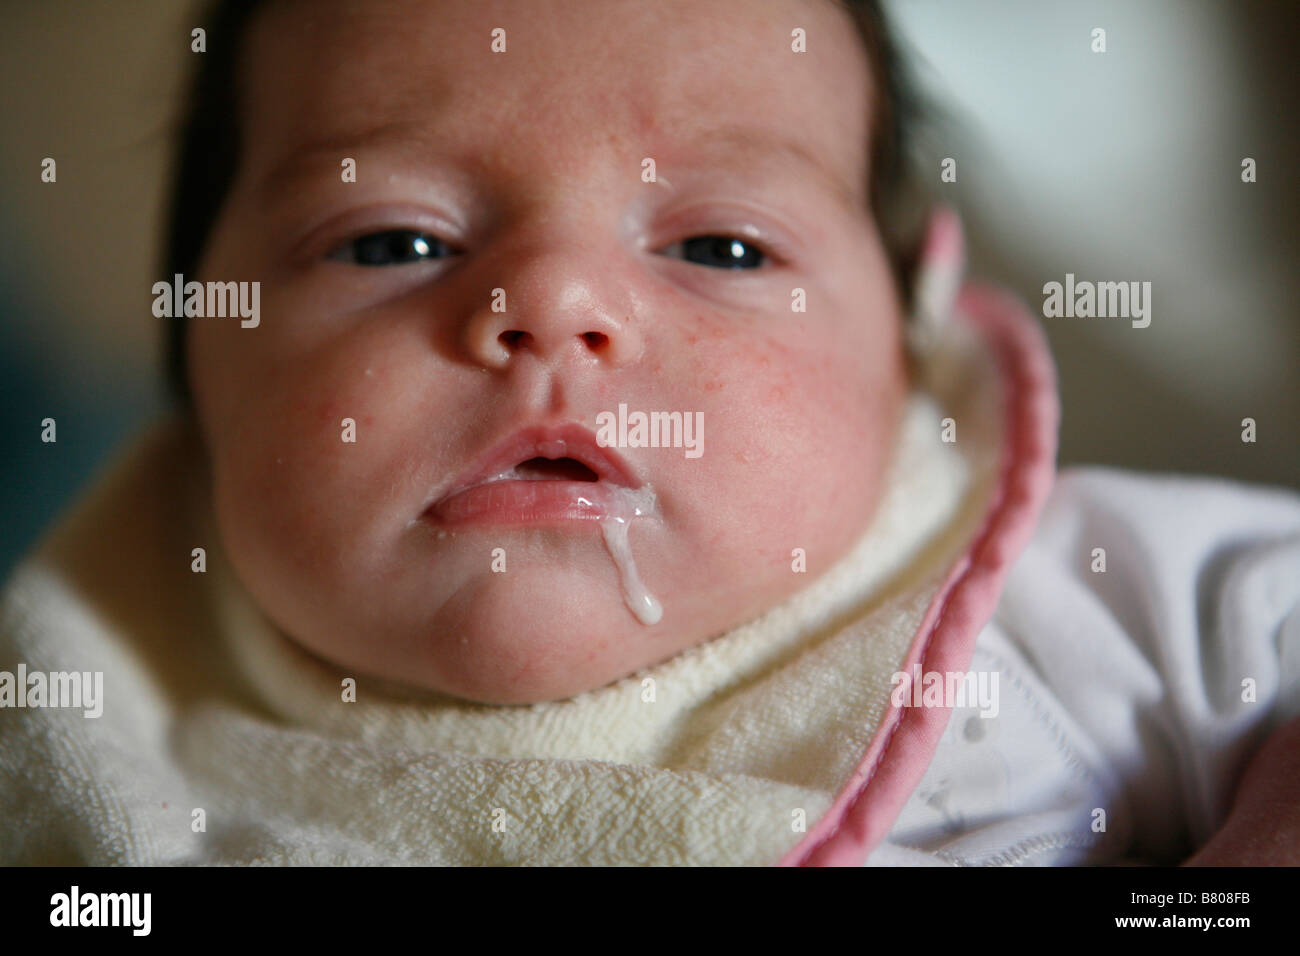 Un bebé escurre la leche de su boca Foto de stock